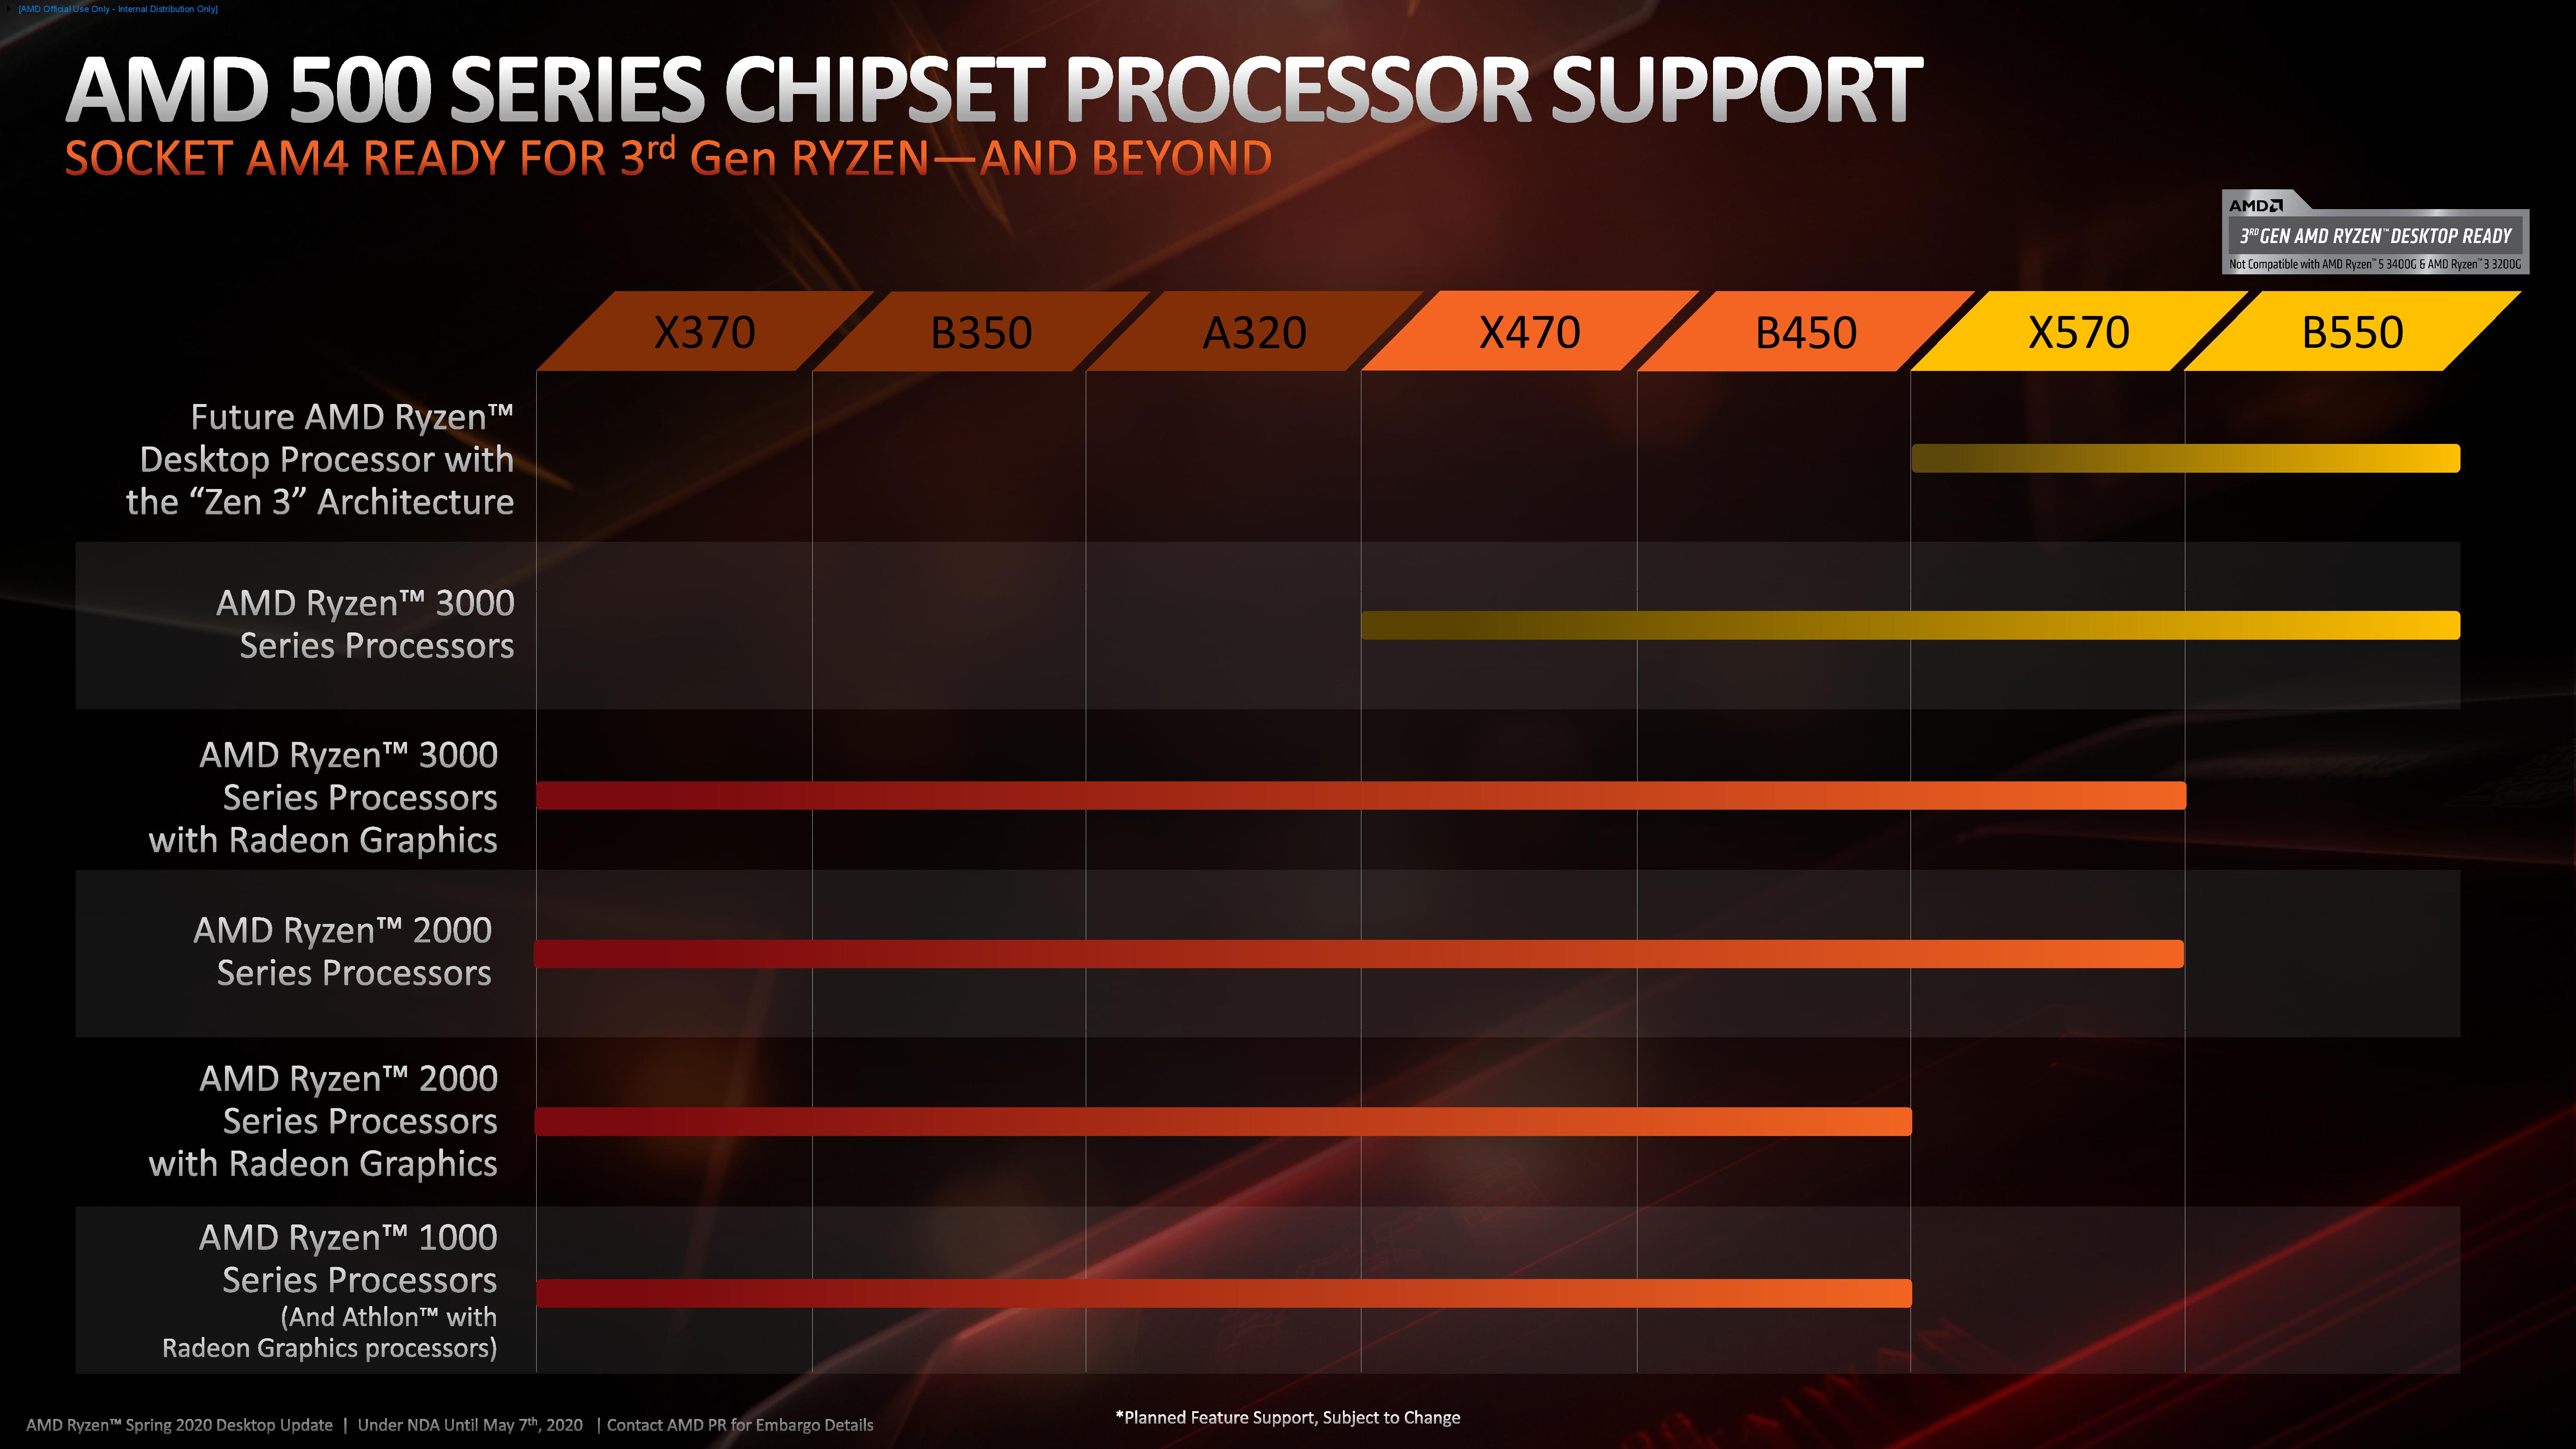 Blootstellen barrière binnenplaats The AMD Ryzen 3 3300X and 3100 CPU Review: A Budget Gaming Bonanza